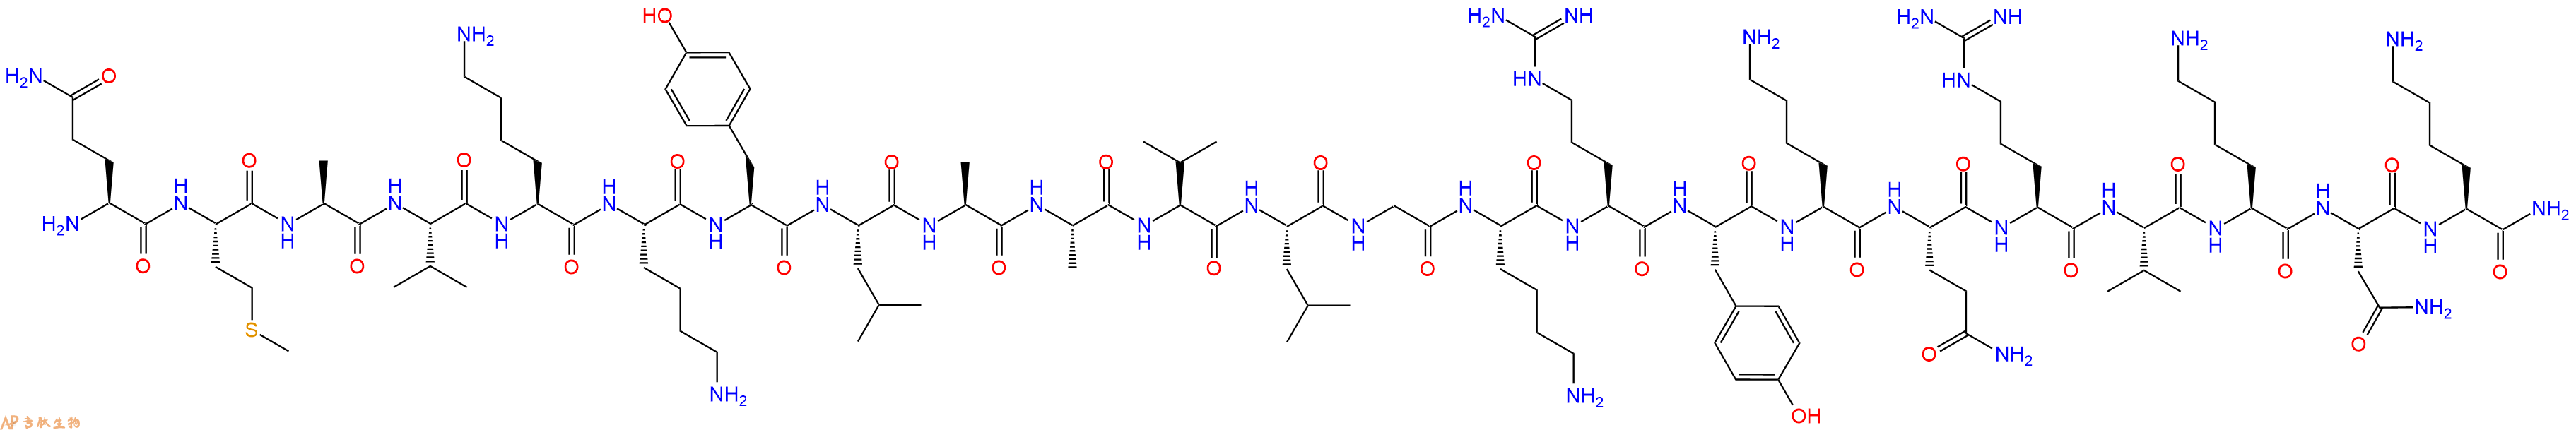 专肽生物产品PACAP-38(16-38), human, ovine, rat144025-82-1